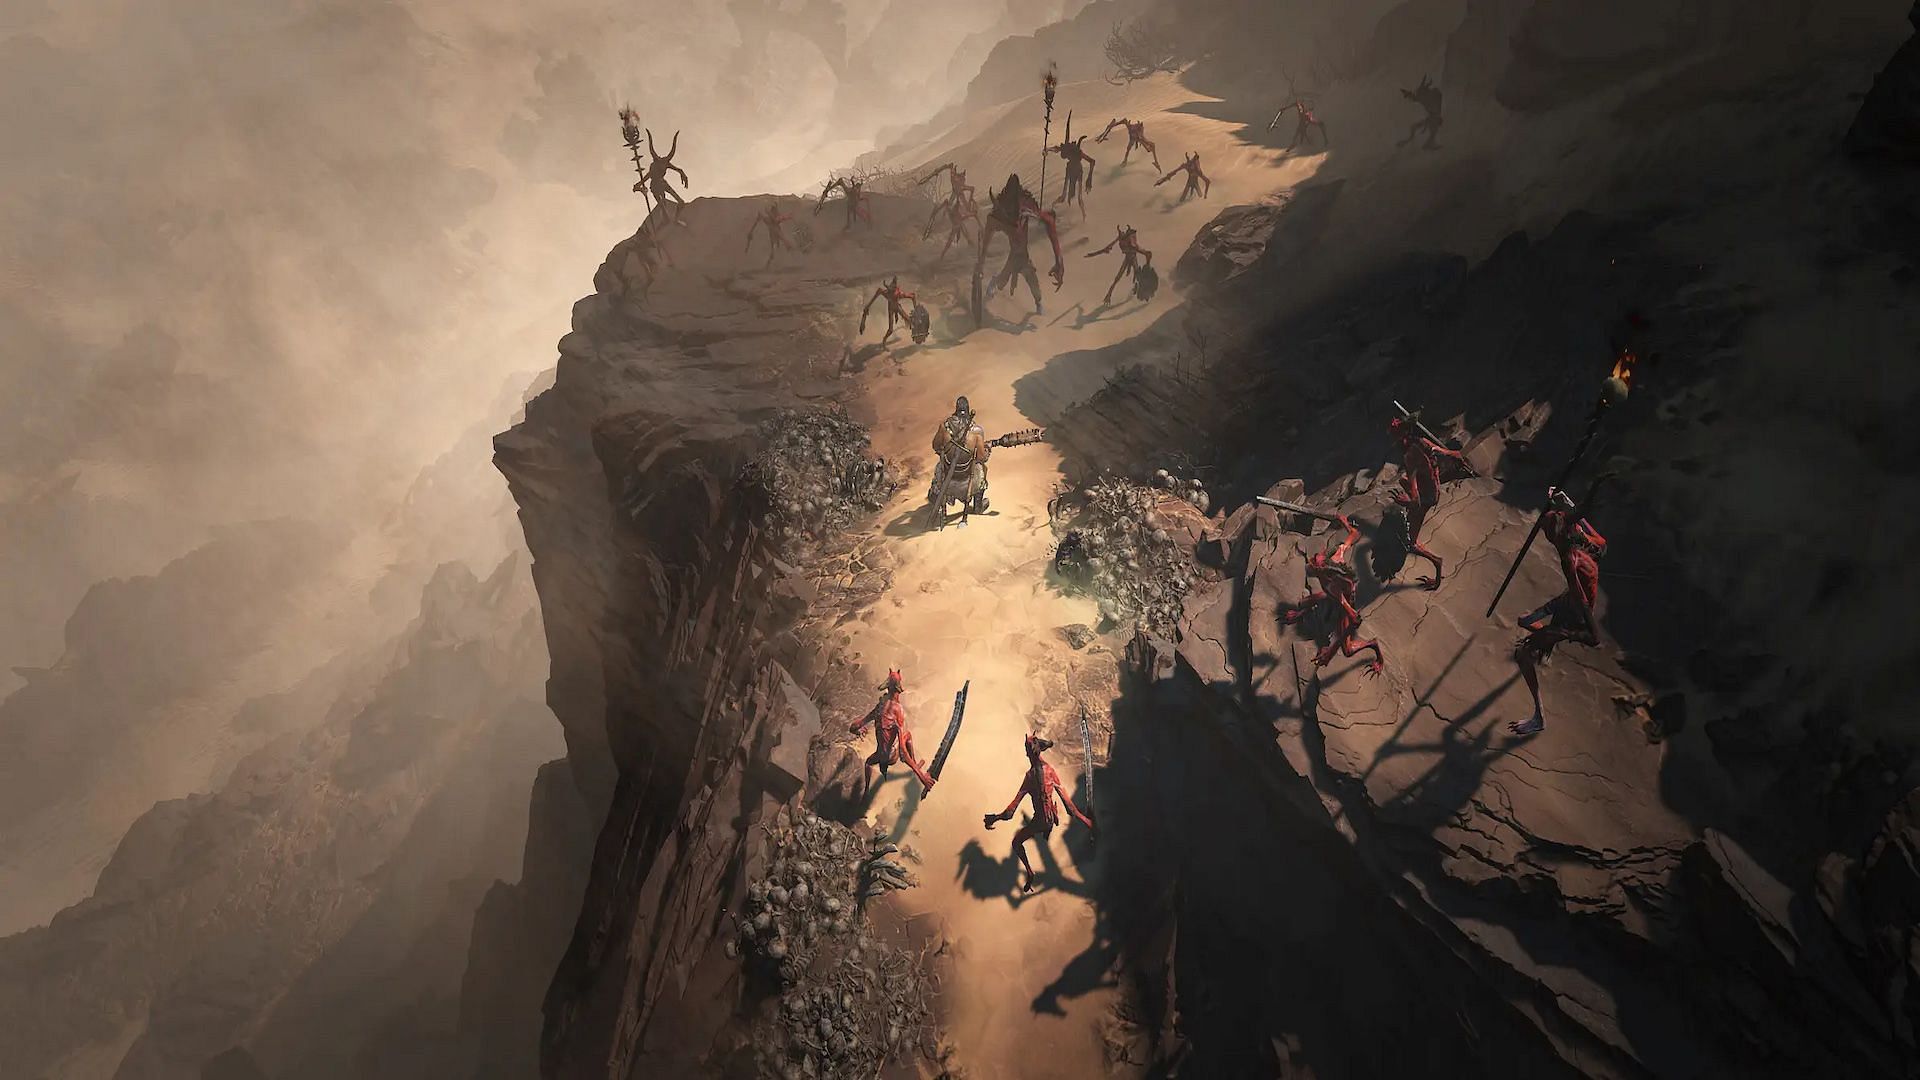 Diablo 4 Kehjistan region (Image via Blizzard Entertainment)